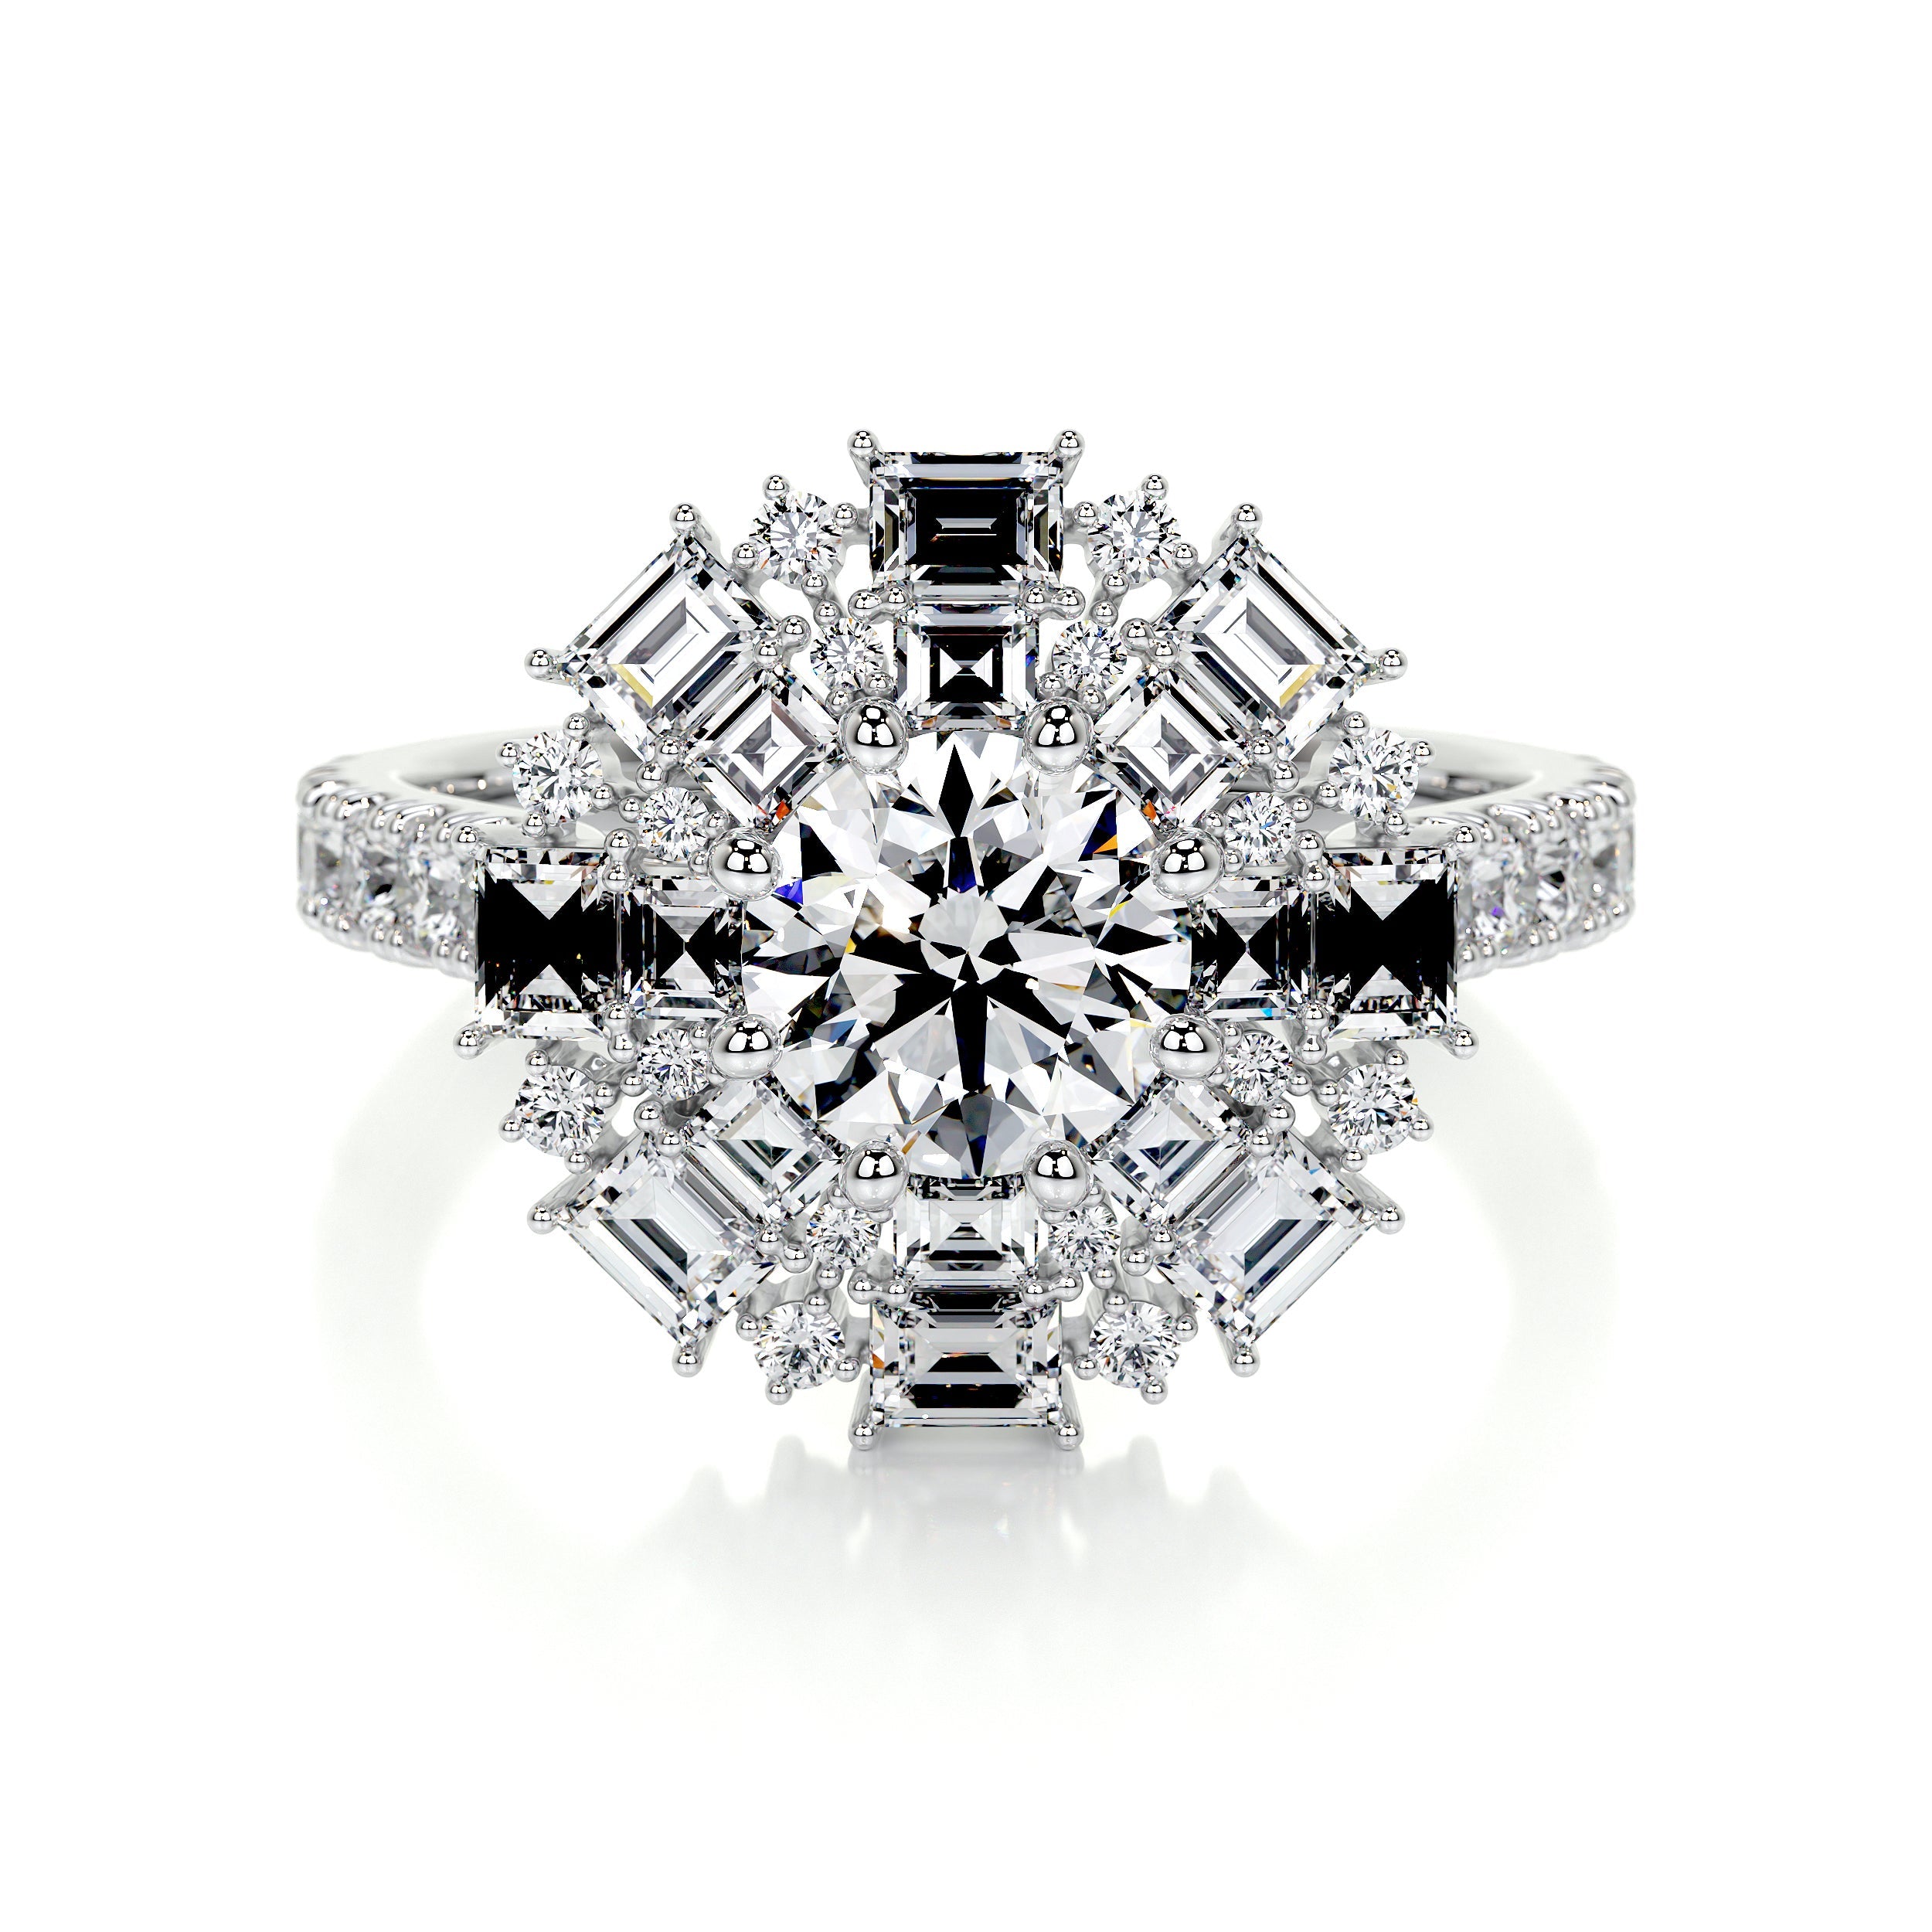 Snowflake Lab Grown Diamond Ring -14K White Gold